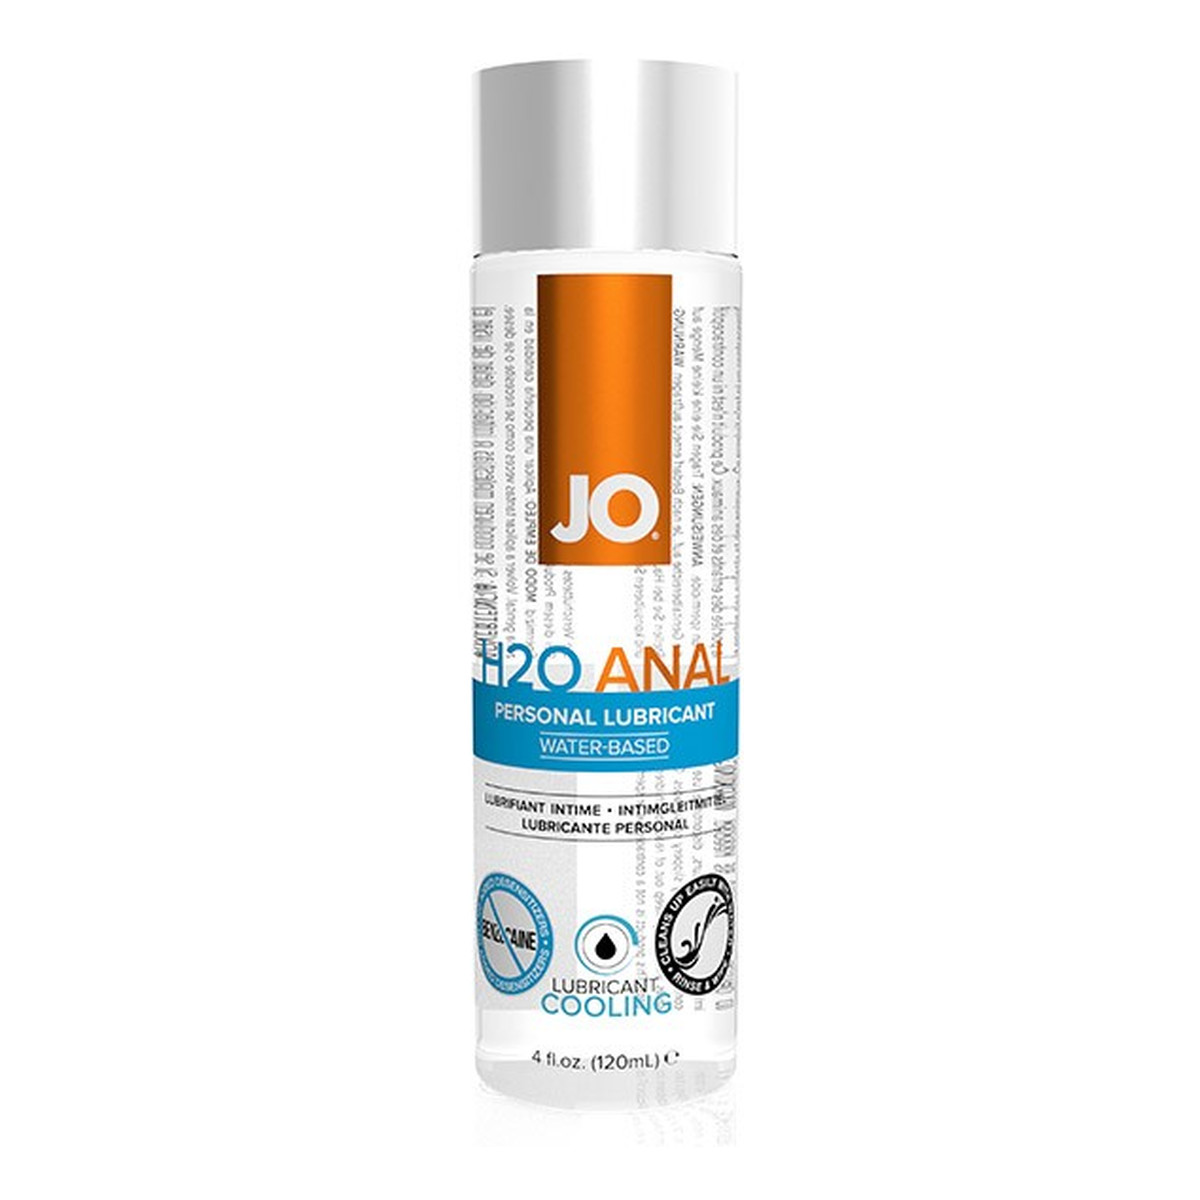 System Jo H2o anal cooling personal lubricant chłodzący lubrykant analny na bazie wody 120ml